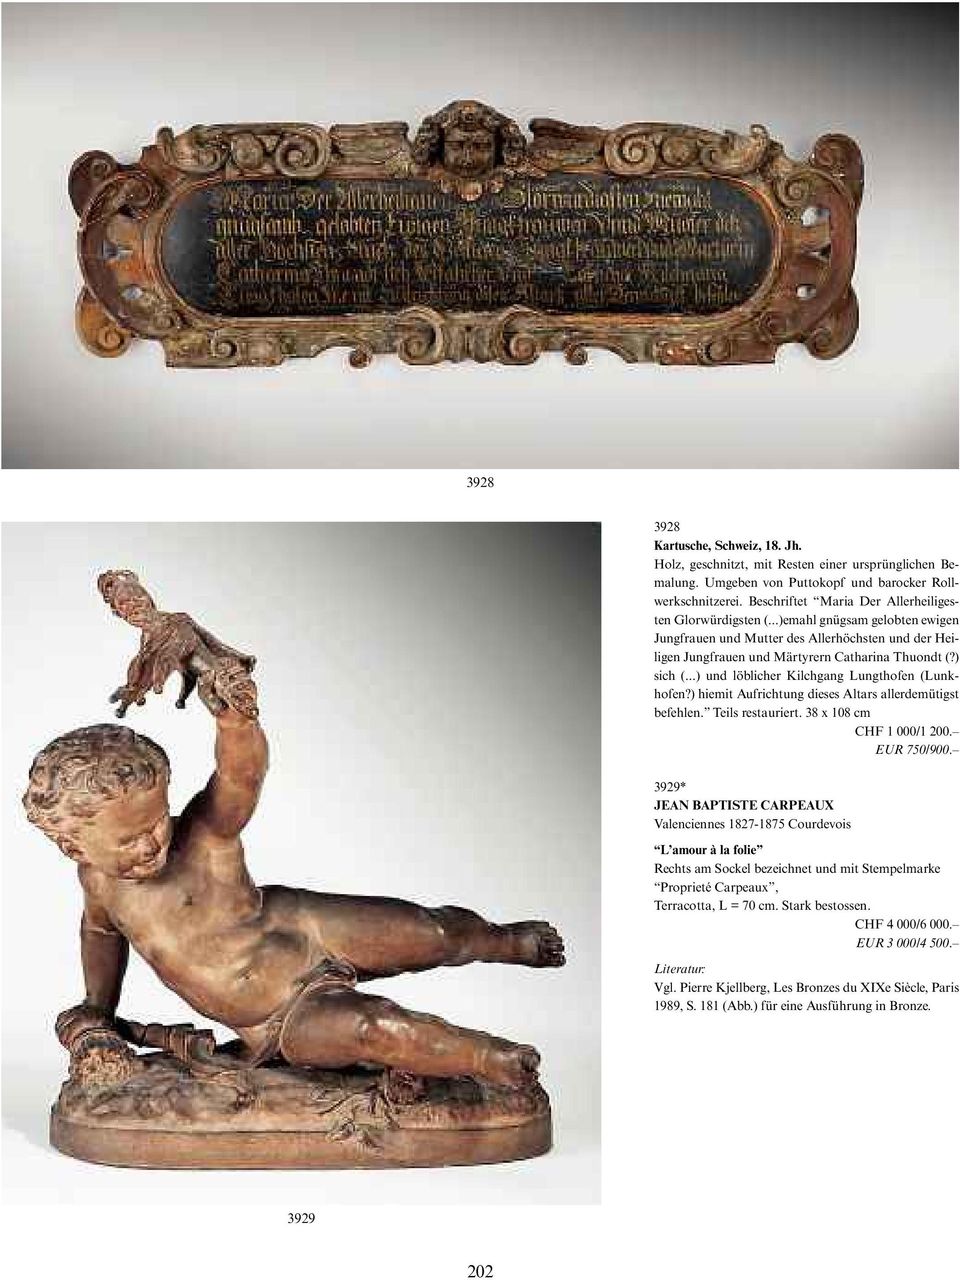 ..) und löblicher Kilchgang Lungthofen (Lunkhofen?) hiemit Aufrichtung dieses Altars allerdemütigst befehlen. Teils restauriert. 38 x108 cm CHF 1000/1 200. EUR 750/900.